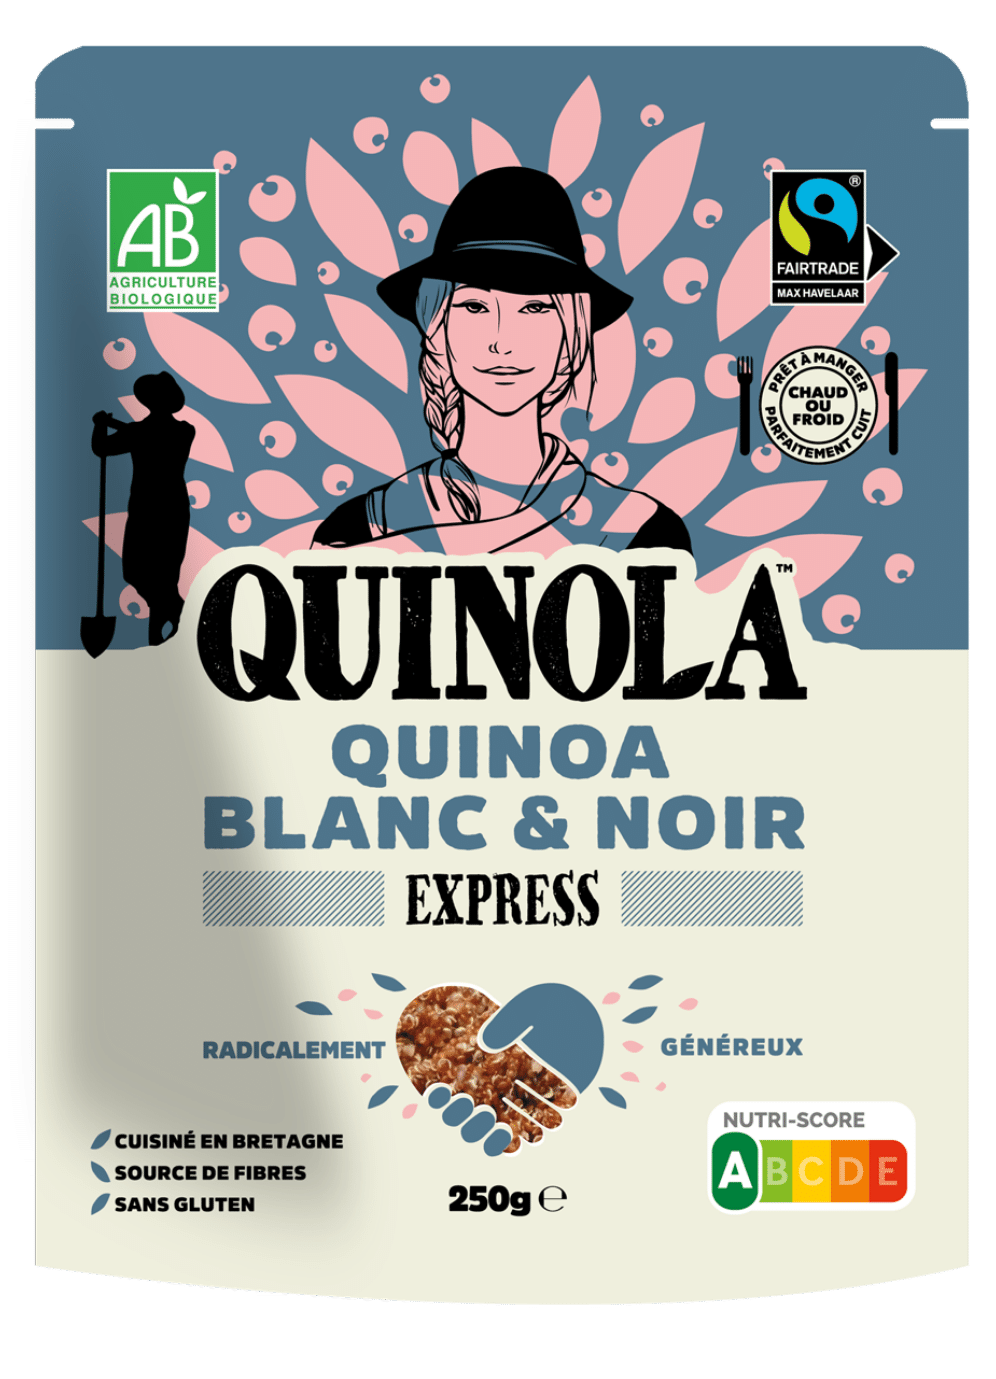 Quinoa quinoa express